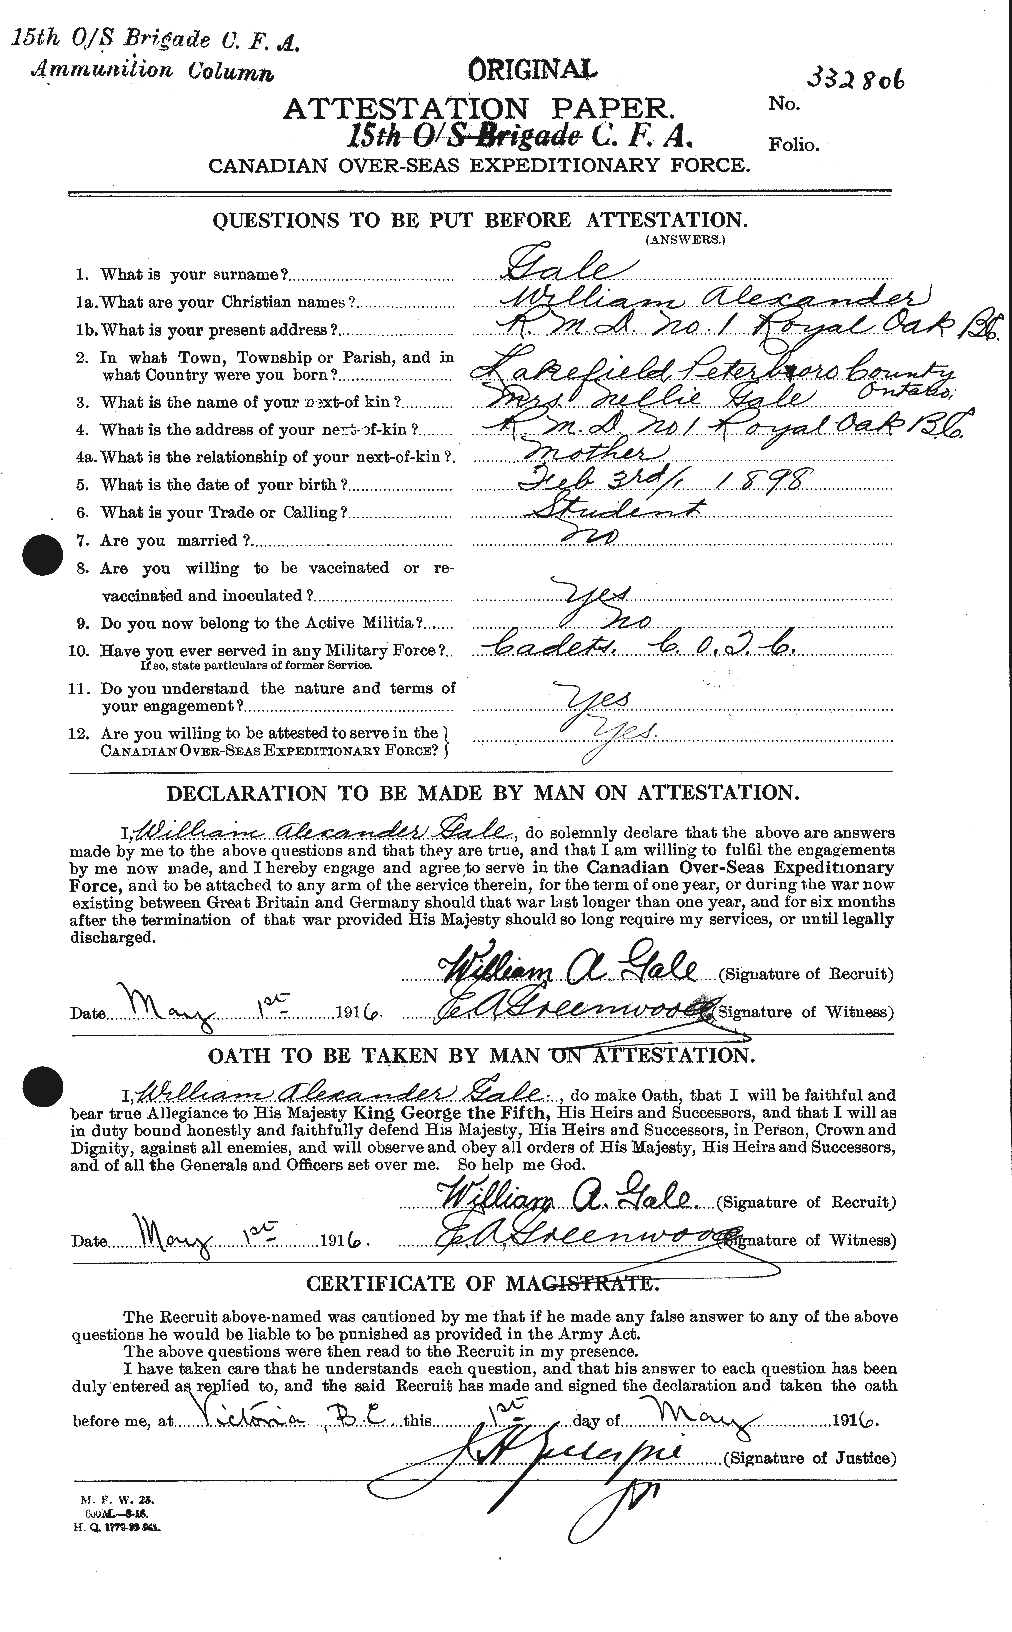 Dossiers du Personnel de la Première Guerre mondiale - CEC 345433a